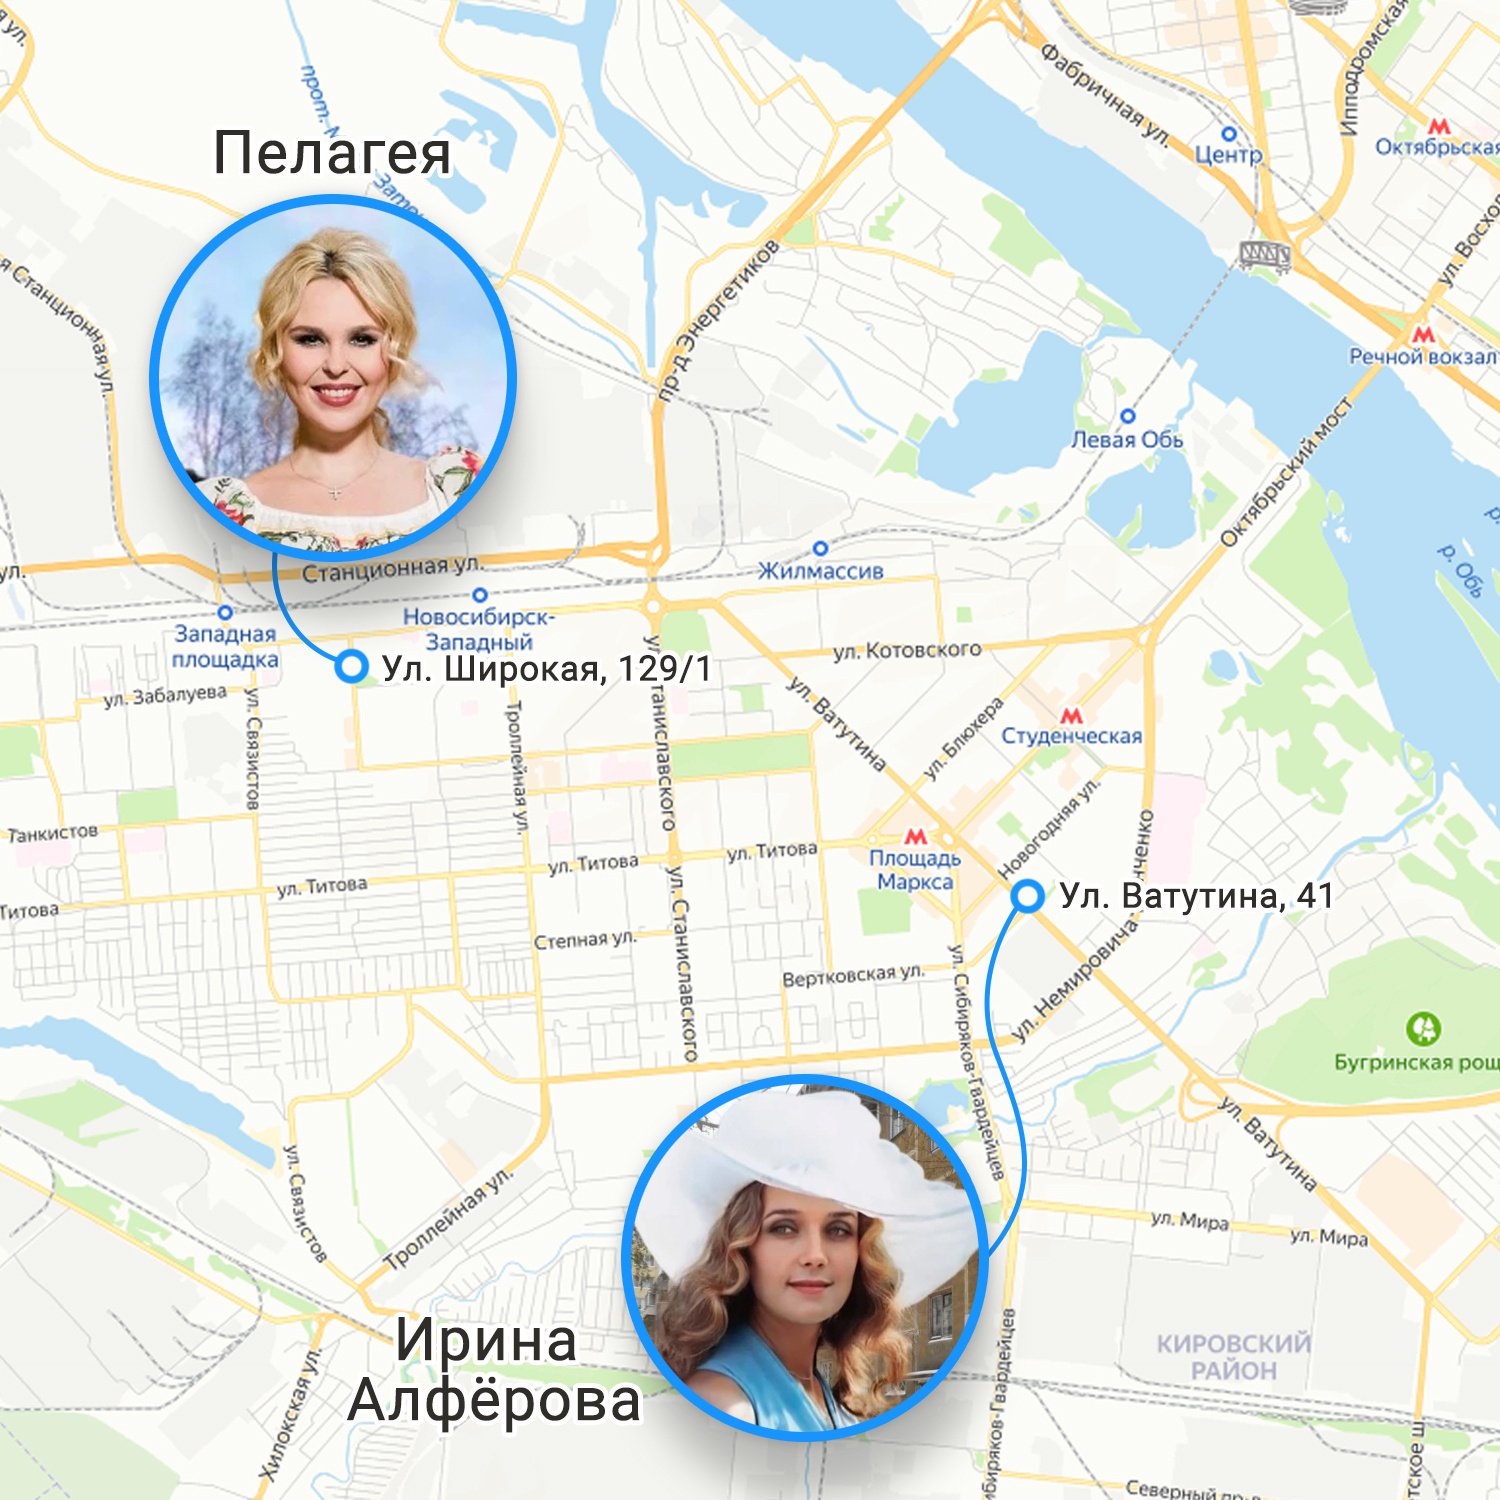 Какие люди живут в новосибирске. Знаменитости Новосибирска. Какие знаменитости живут в Новосибирске. Где живут звезды в Москве карта. Известные люди жившие в Новосибирске.